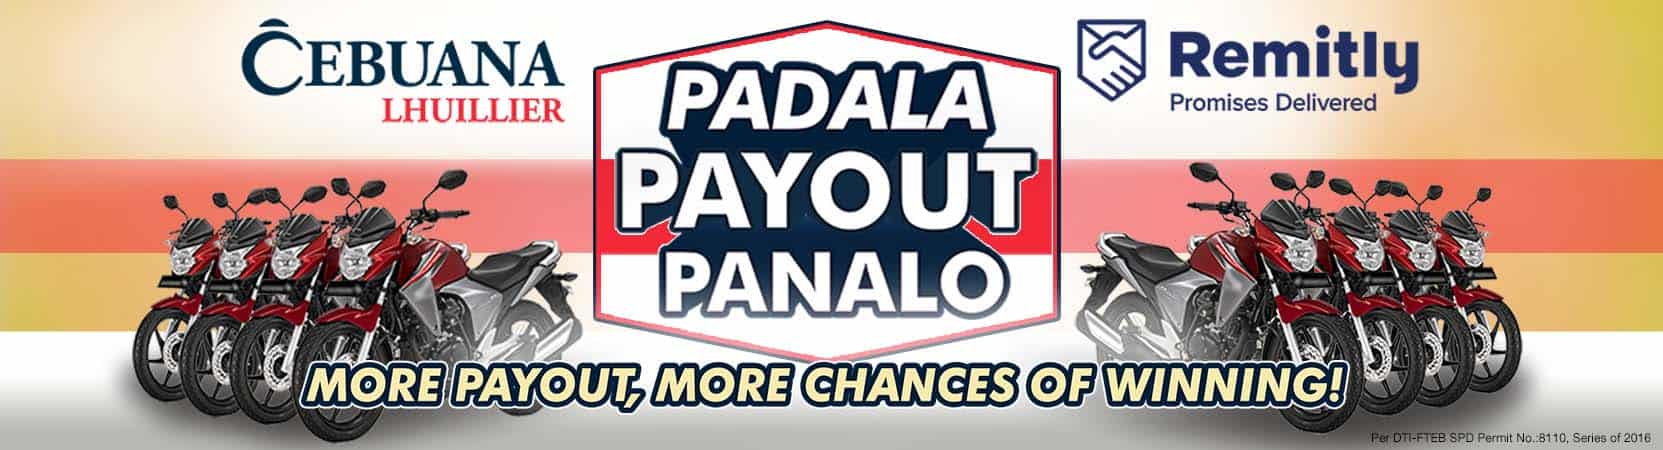 Padala Payout Panalo